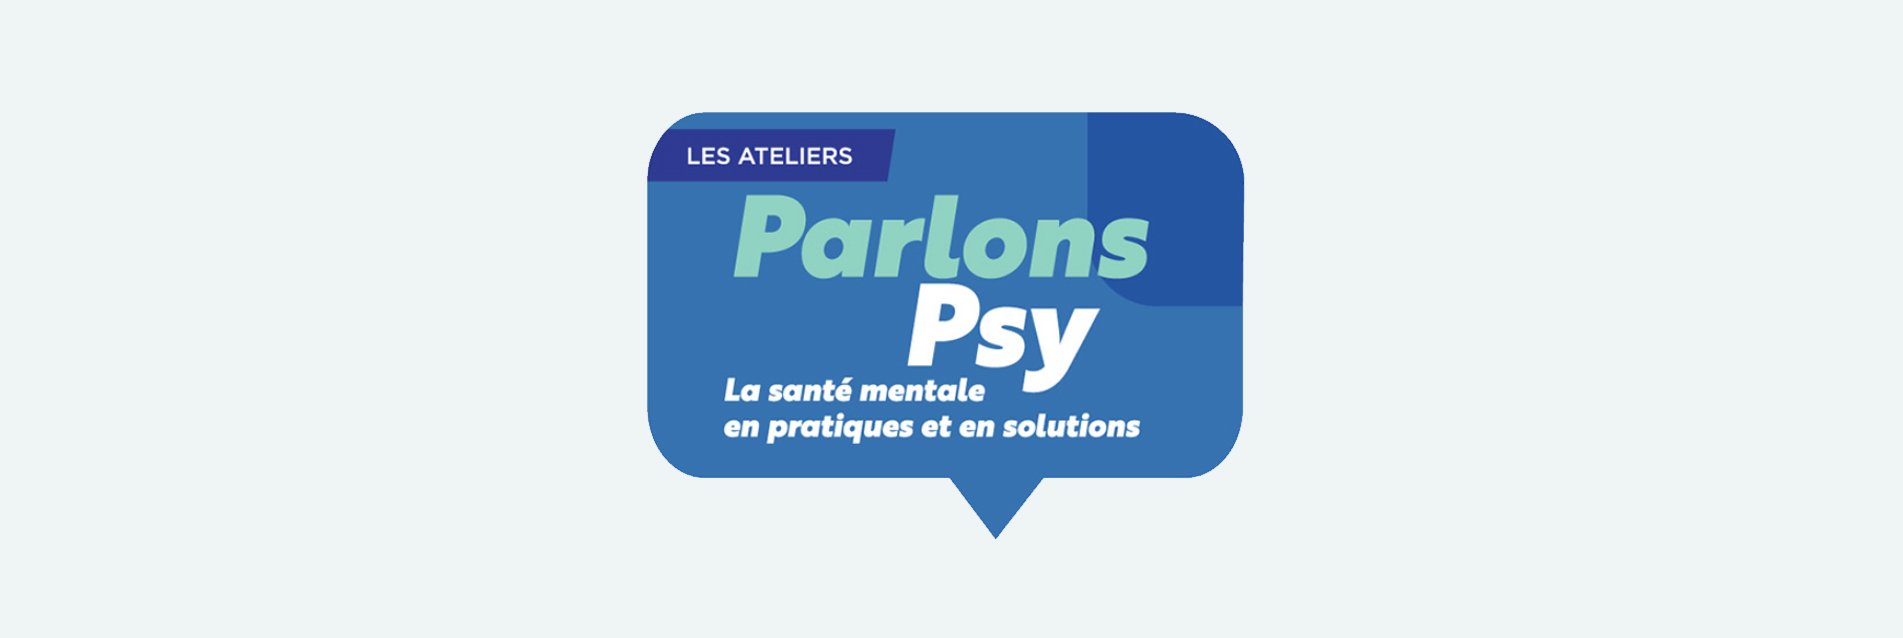 Lancement de PARLONS PSY ! La santé mentale en pratiques et en solutions